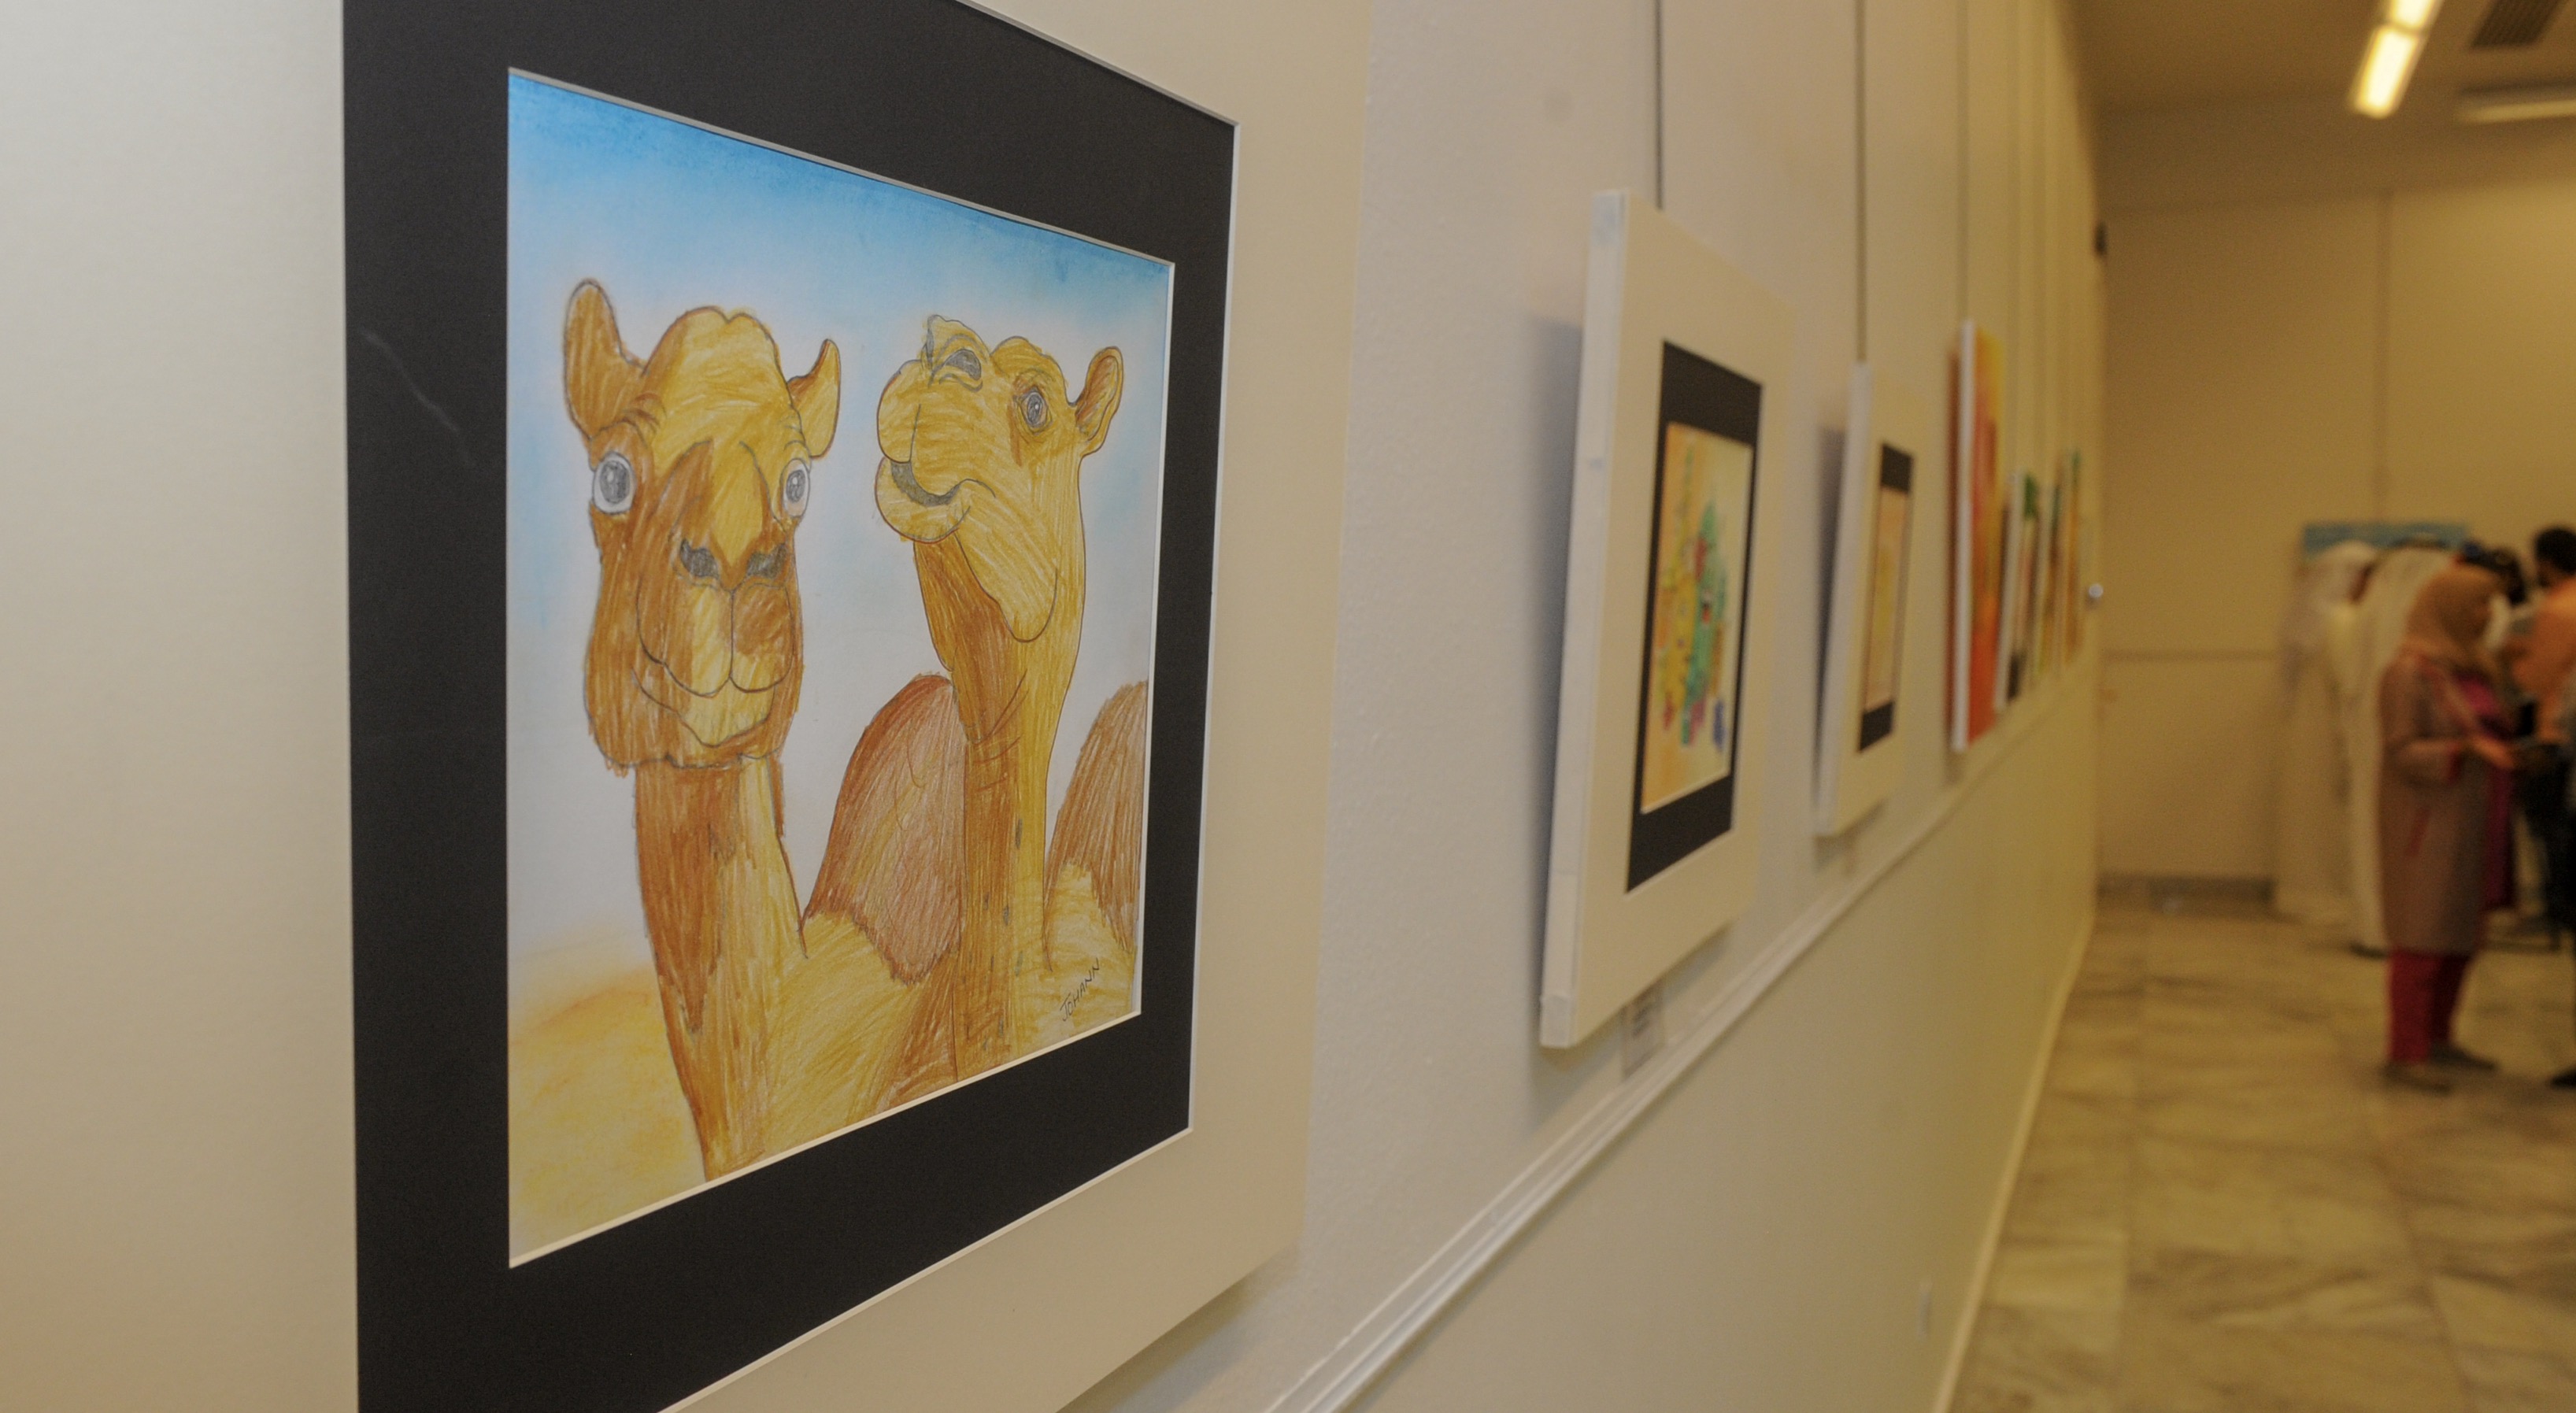 Autistics in Kuwait showcase artistic creativity